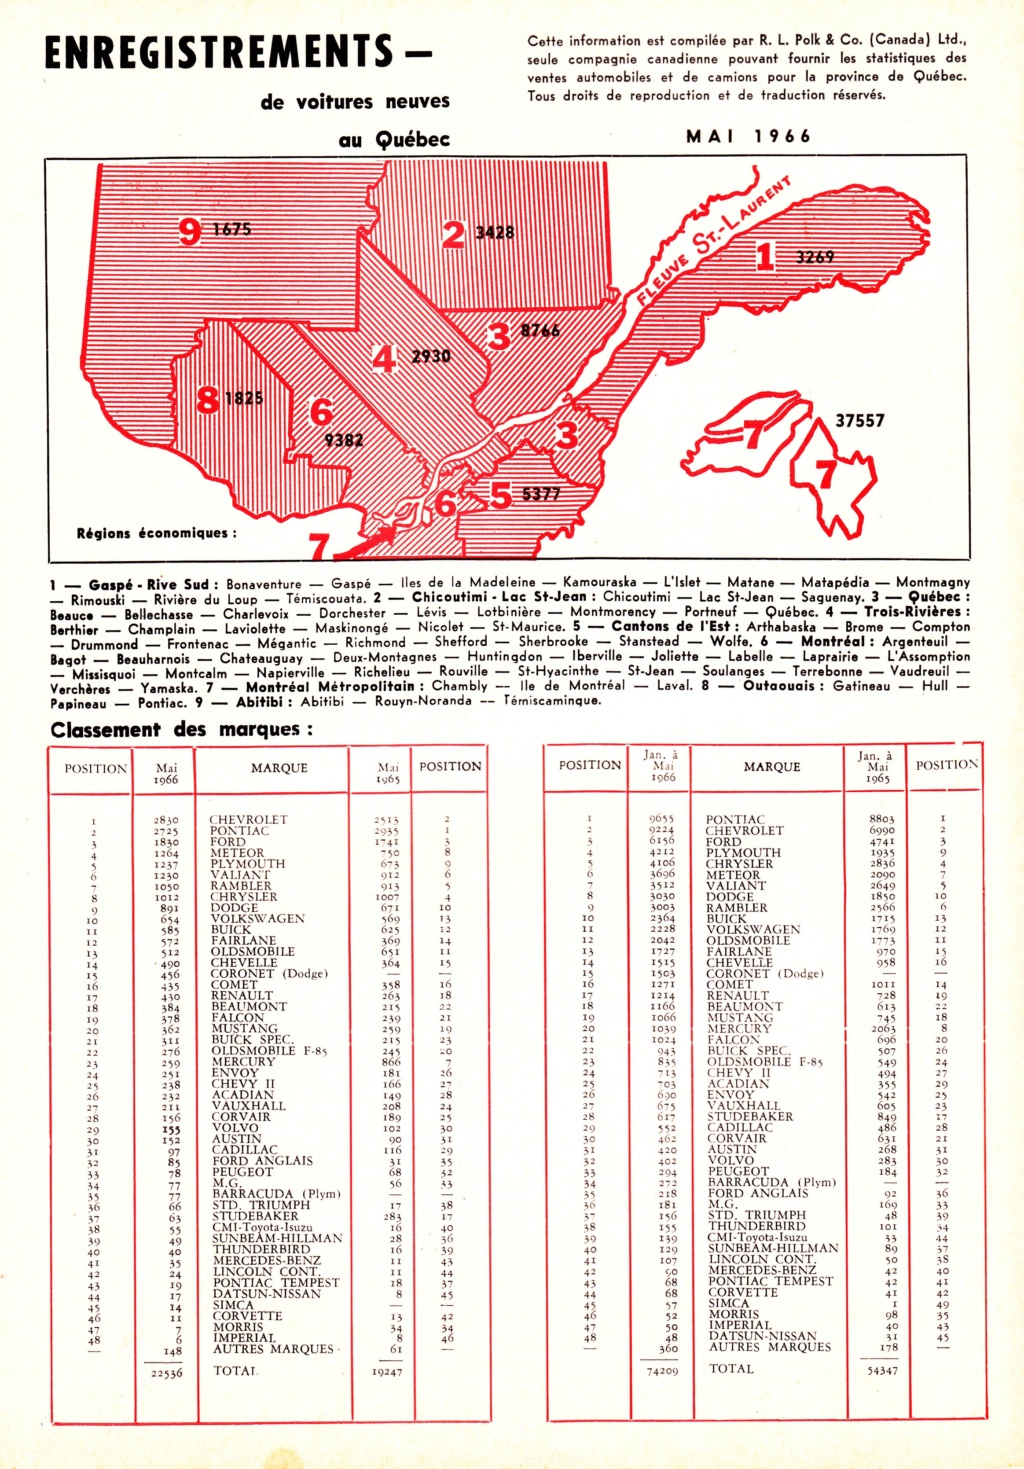 AUTO - Le magazine "L'automobile" et la quantité d'auto vendu au Québec par mois en 1966 Vente_16